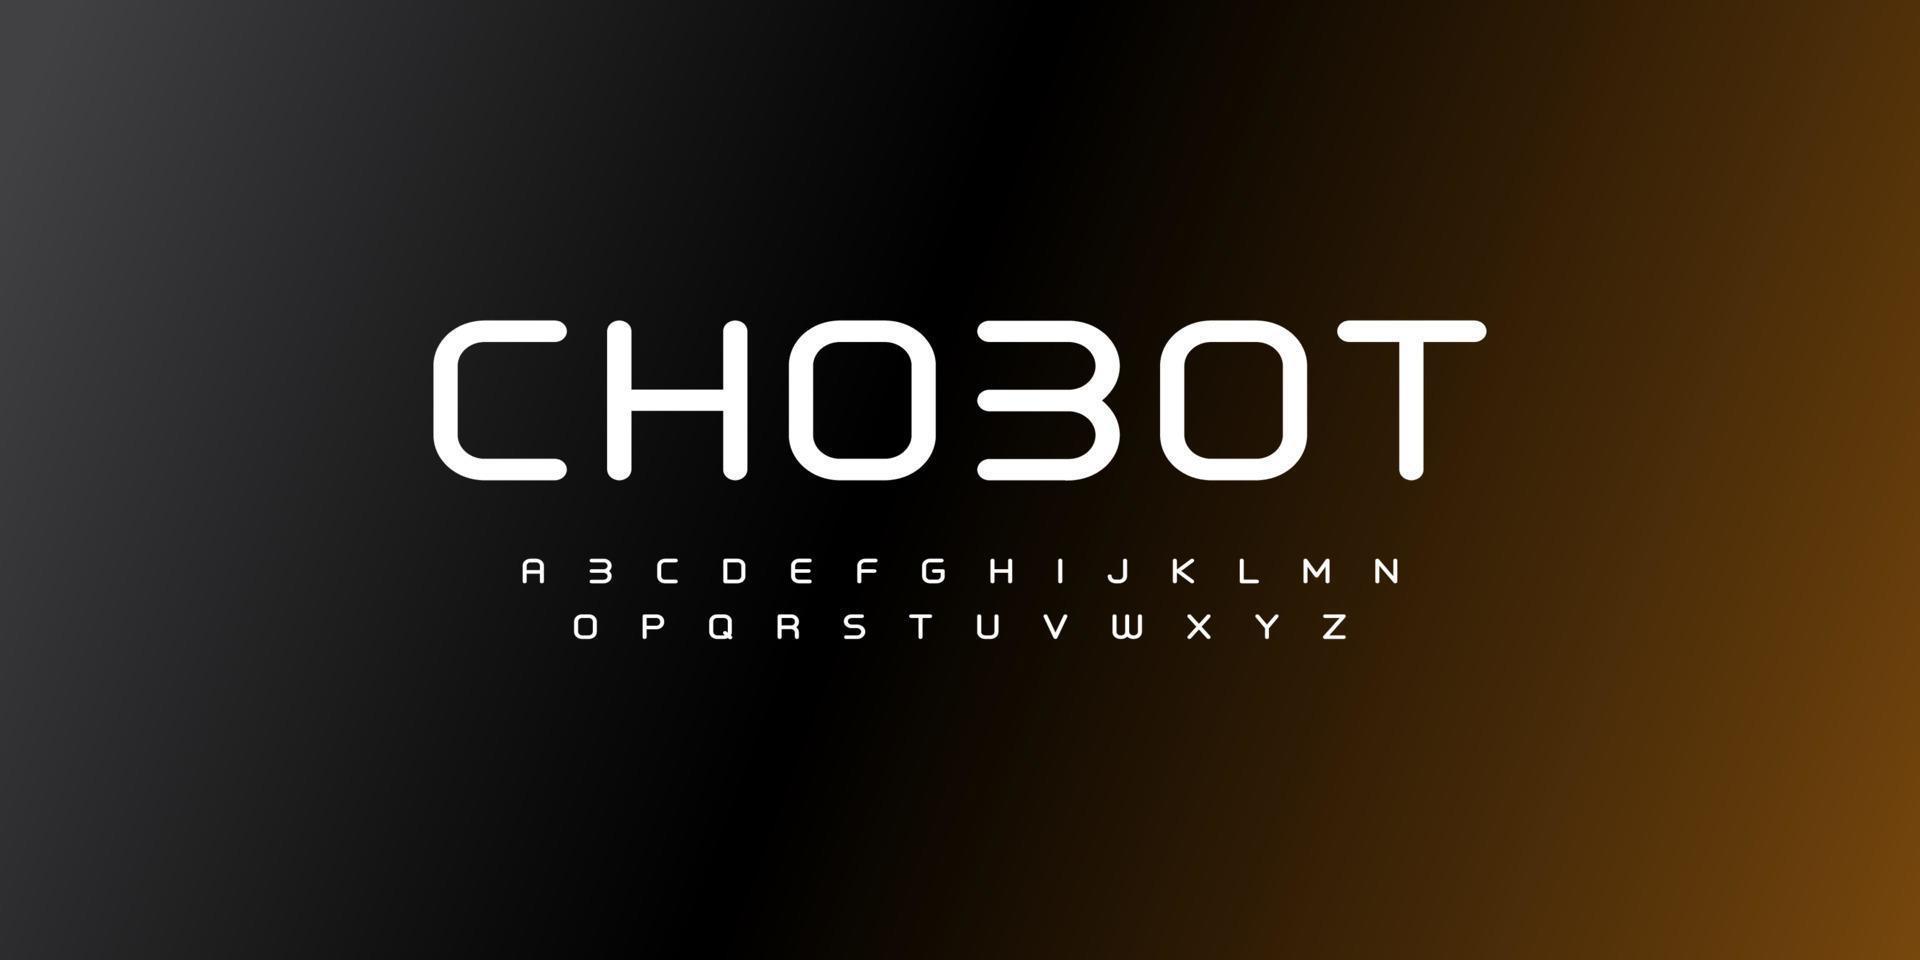 chobot, een abstract lettertype en alfabet voor technologie. techno-effect lettertypen ontwerpen. typografie digitaal sci-fi concept. vector illustratie